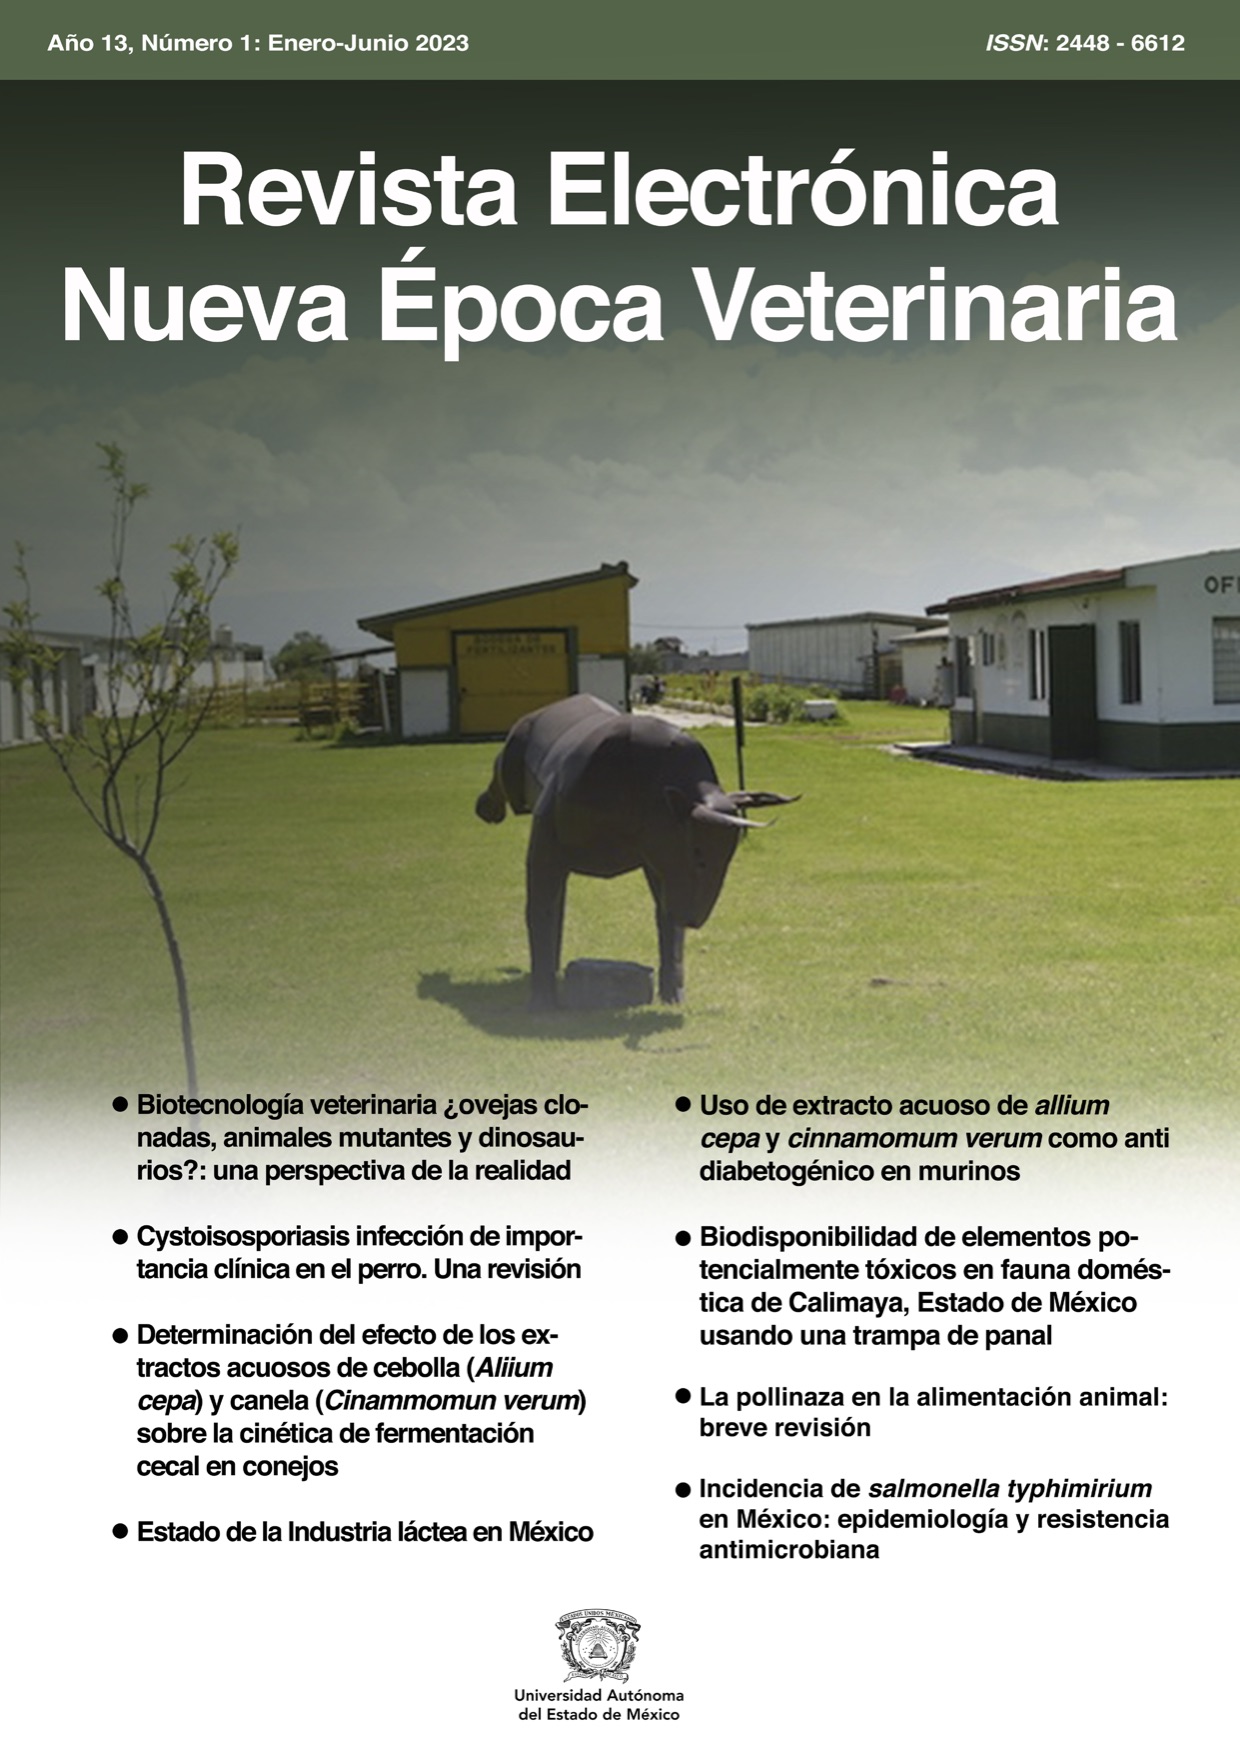 Revista Electrónica Nueva Época Veterinaria, Año 13 - No. 1, Enero-Junio 2023